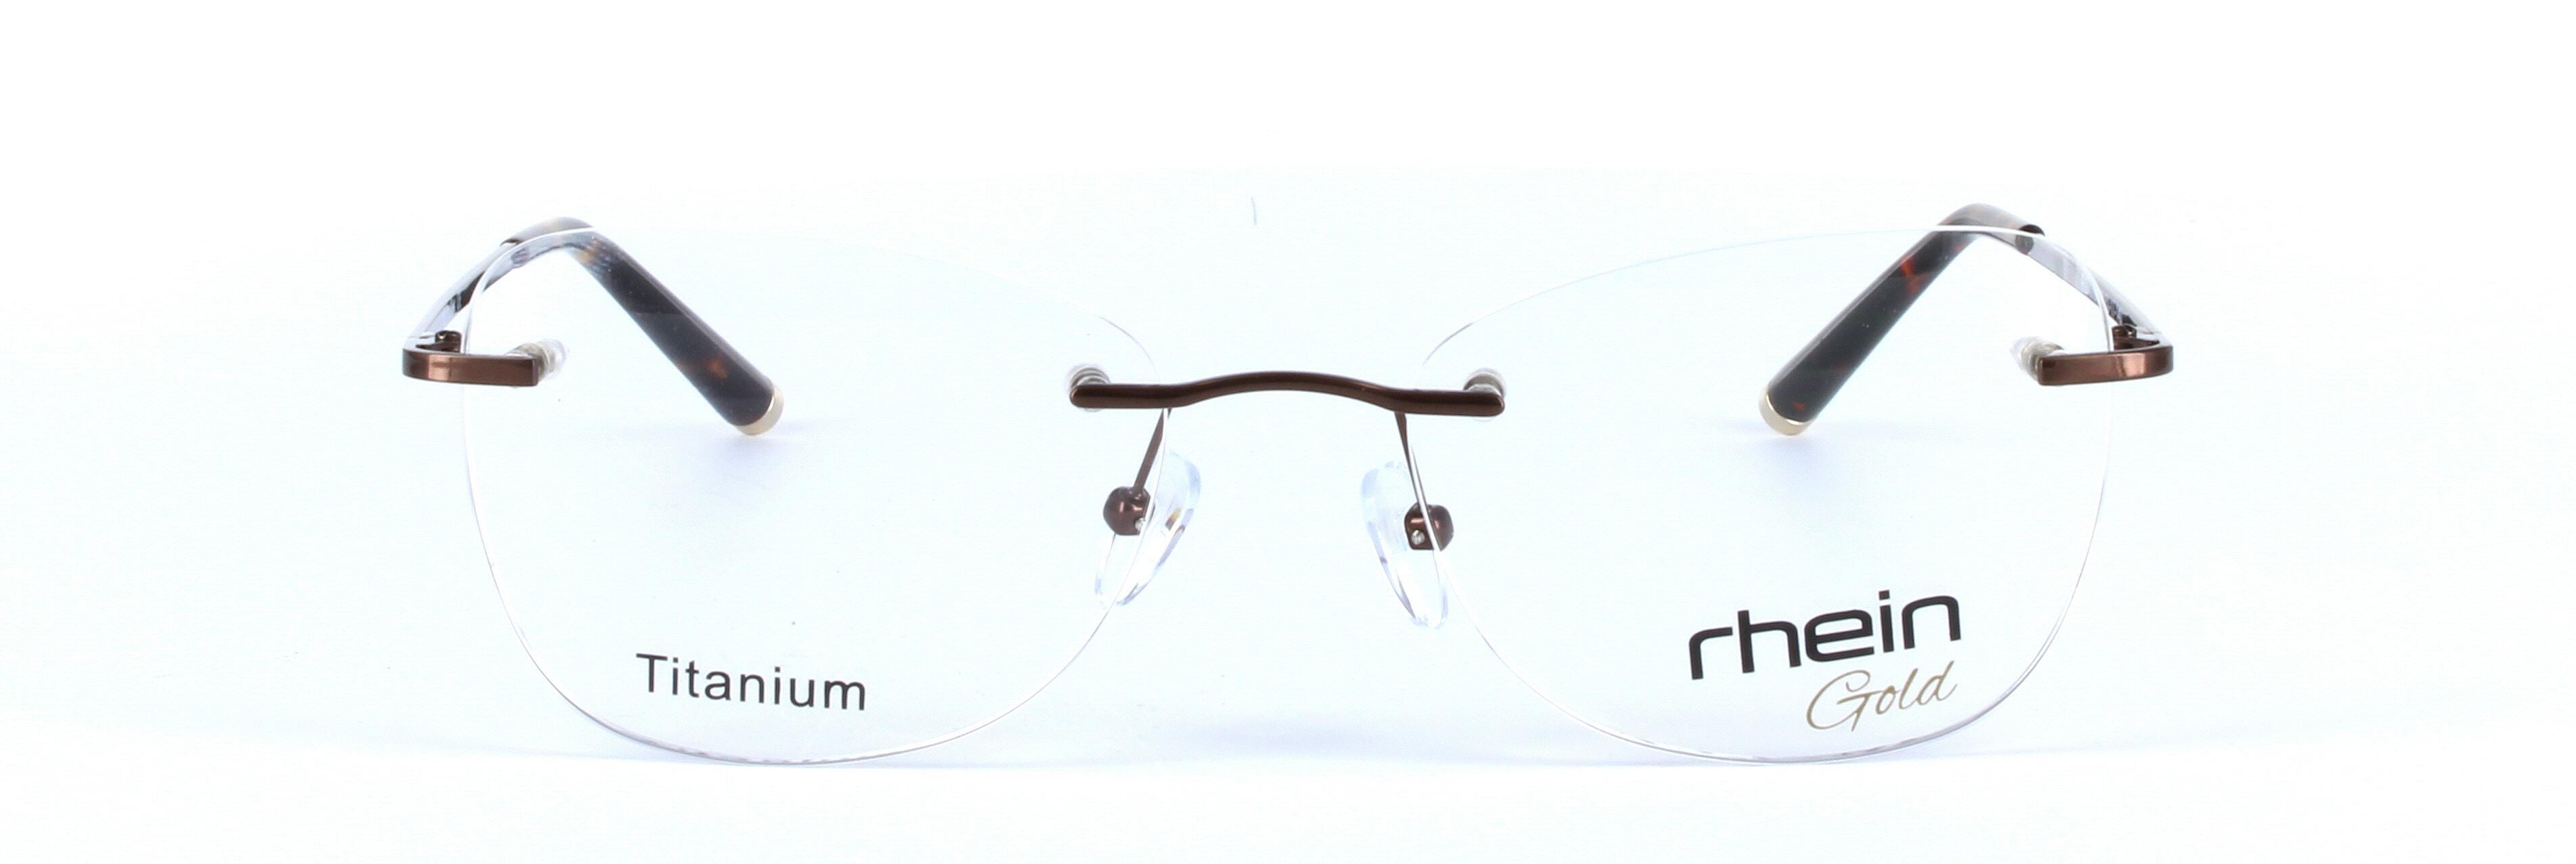 Hope Titanium Brown Rimless Rectangular Titanium Glasses - Image View 5